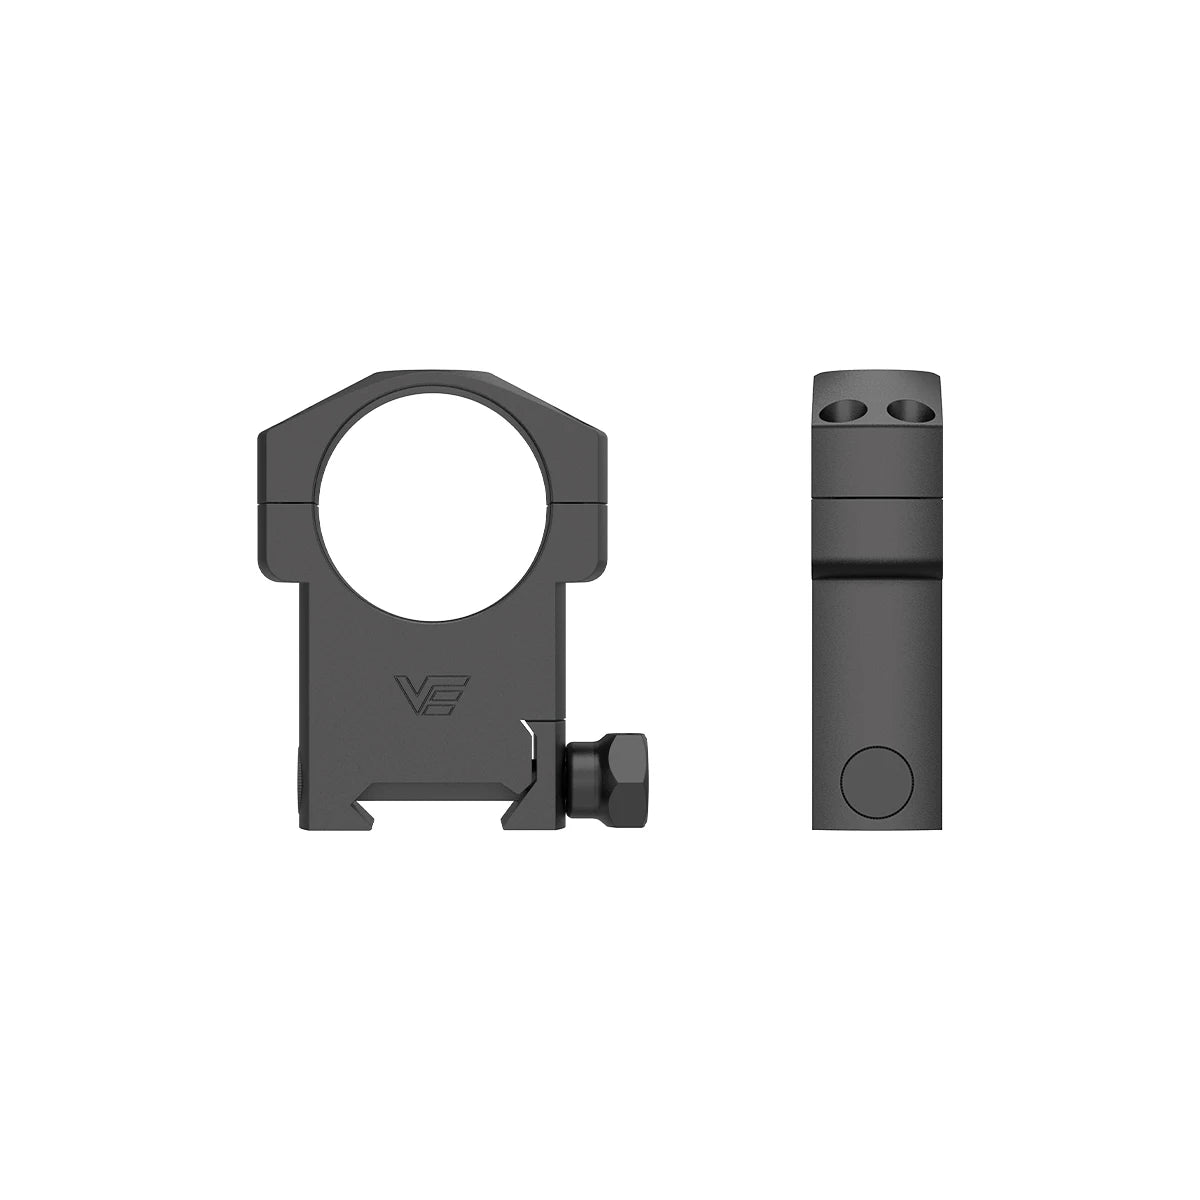 Anneaux de portée "Weaver", 25.4mm et 30mm, Profil bas / moyen / haut pour montage sur Rail de 20mm - Vector Optics